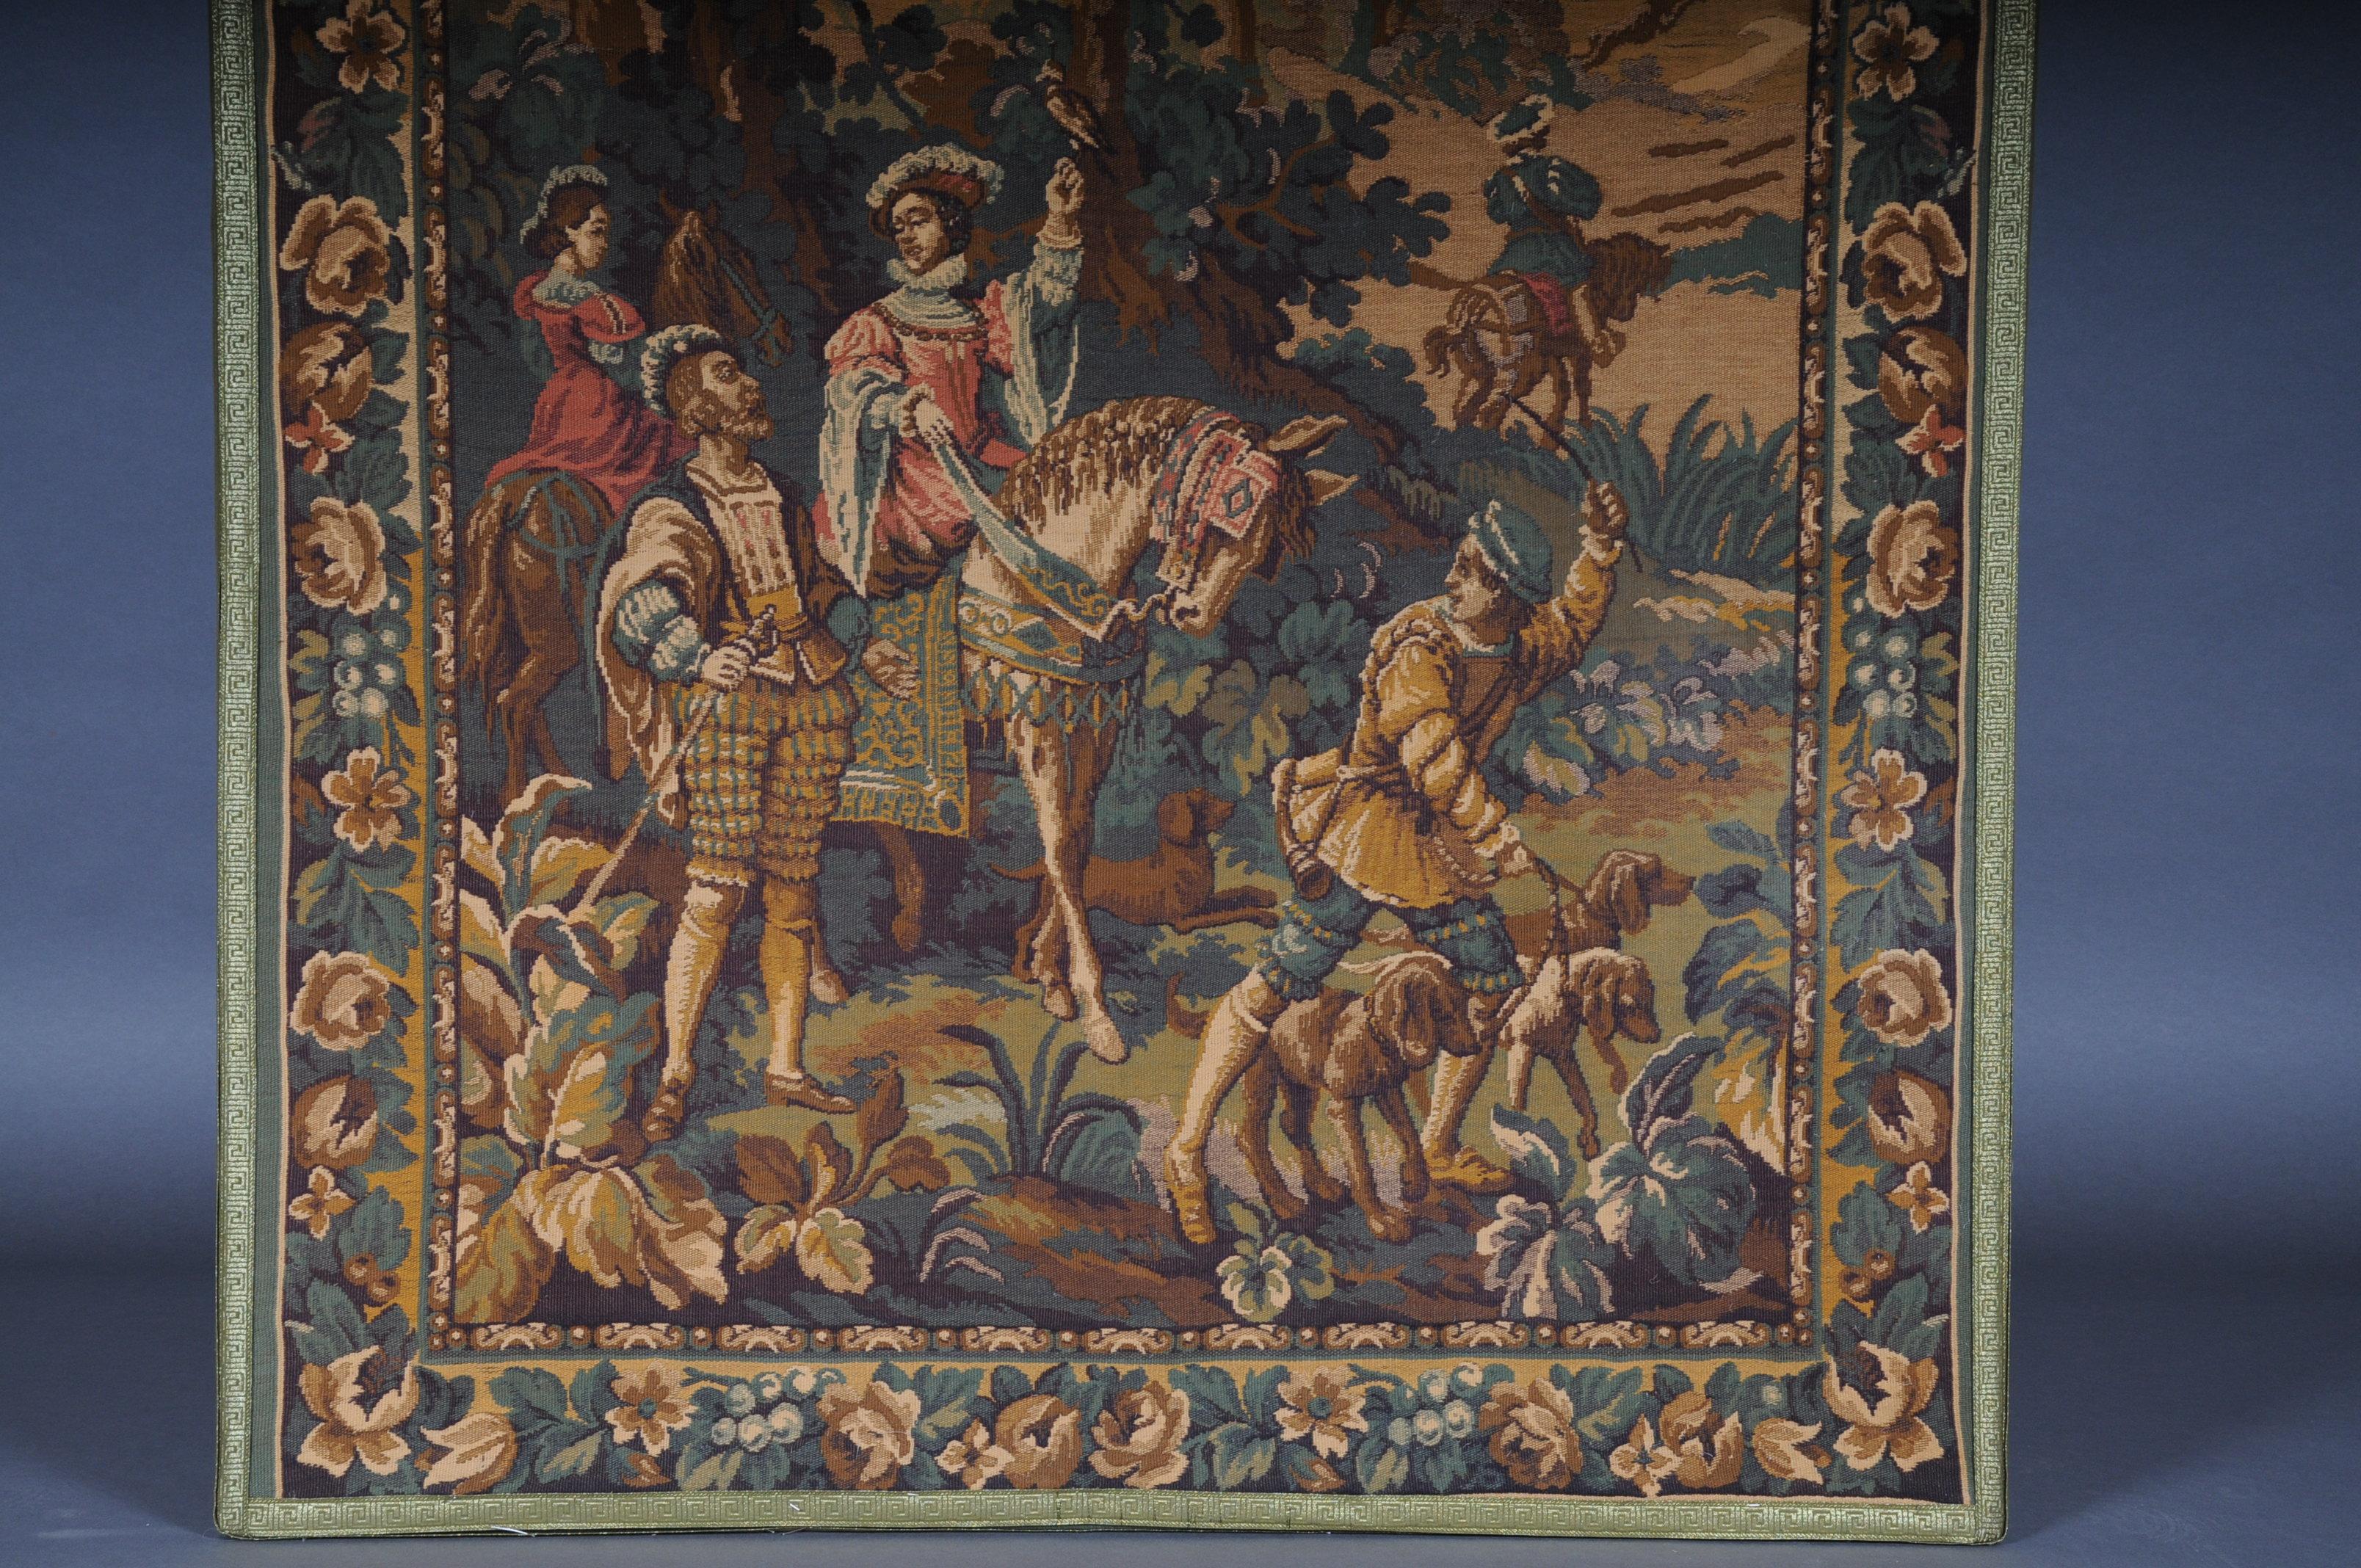 museumsteppich des 20. Jahrhunderts/Gobelein

Beeindruckender und monumentaler Wandteppich. fein gewebter Wandteppich aus dem 20. Jahrhundert. Wahrscheinlich Frankreich.

Es ist eine umfangreiche Landschafts- und Szenendarstellung zu sehen. Sehr